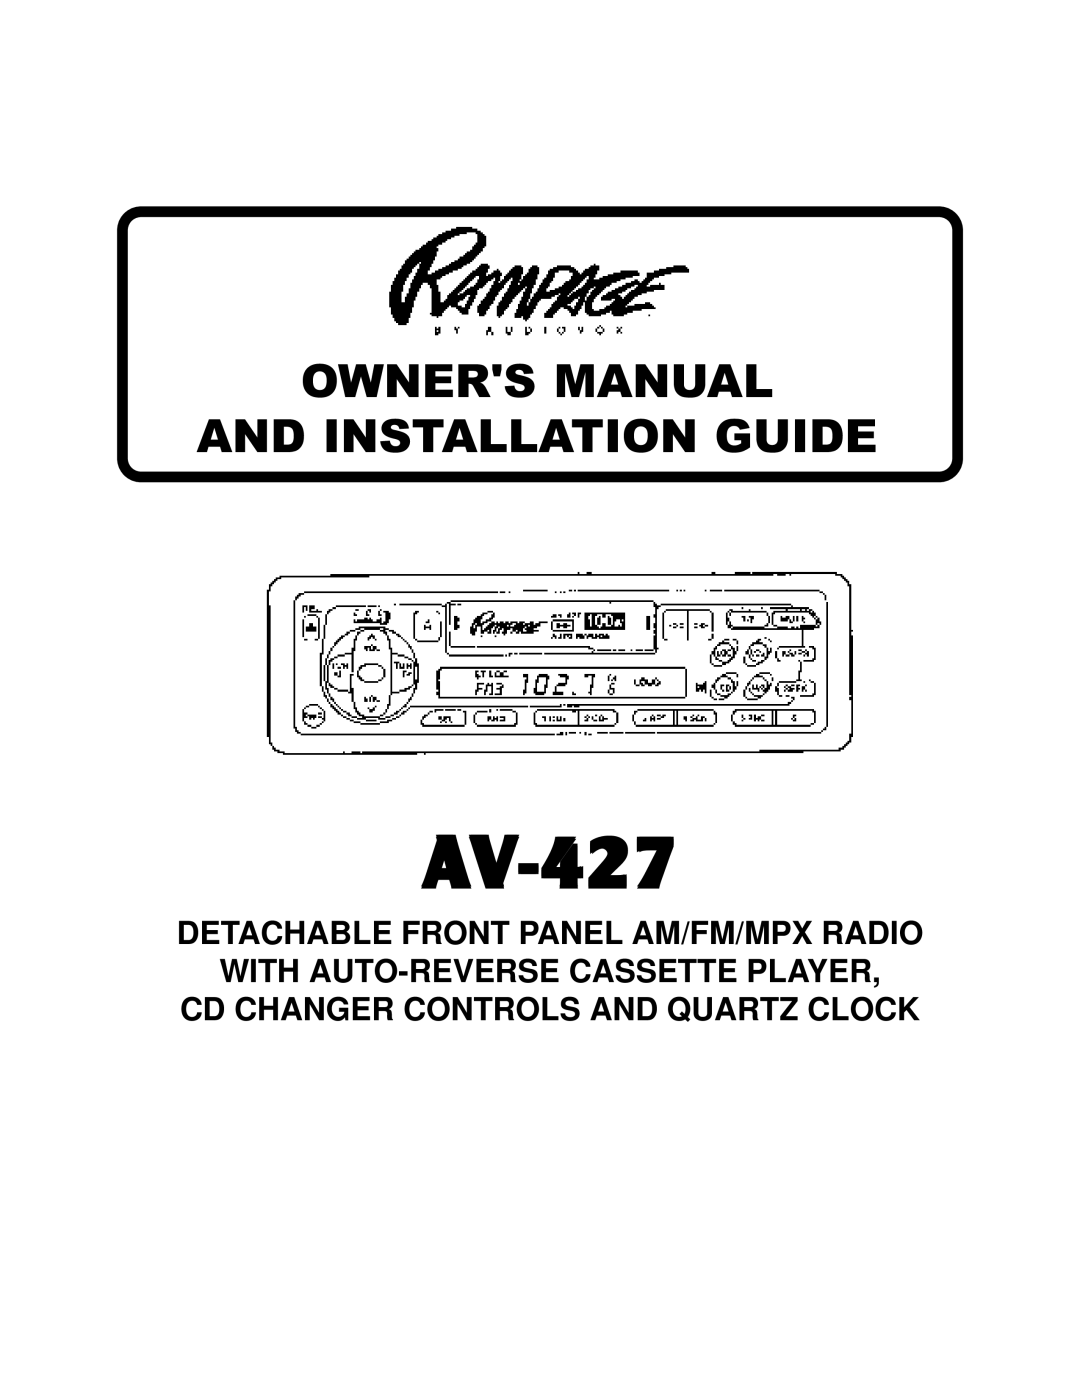 Audiovox AAAAAV-427V-427V-427V-427V-427 owner manual 